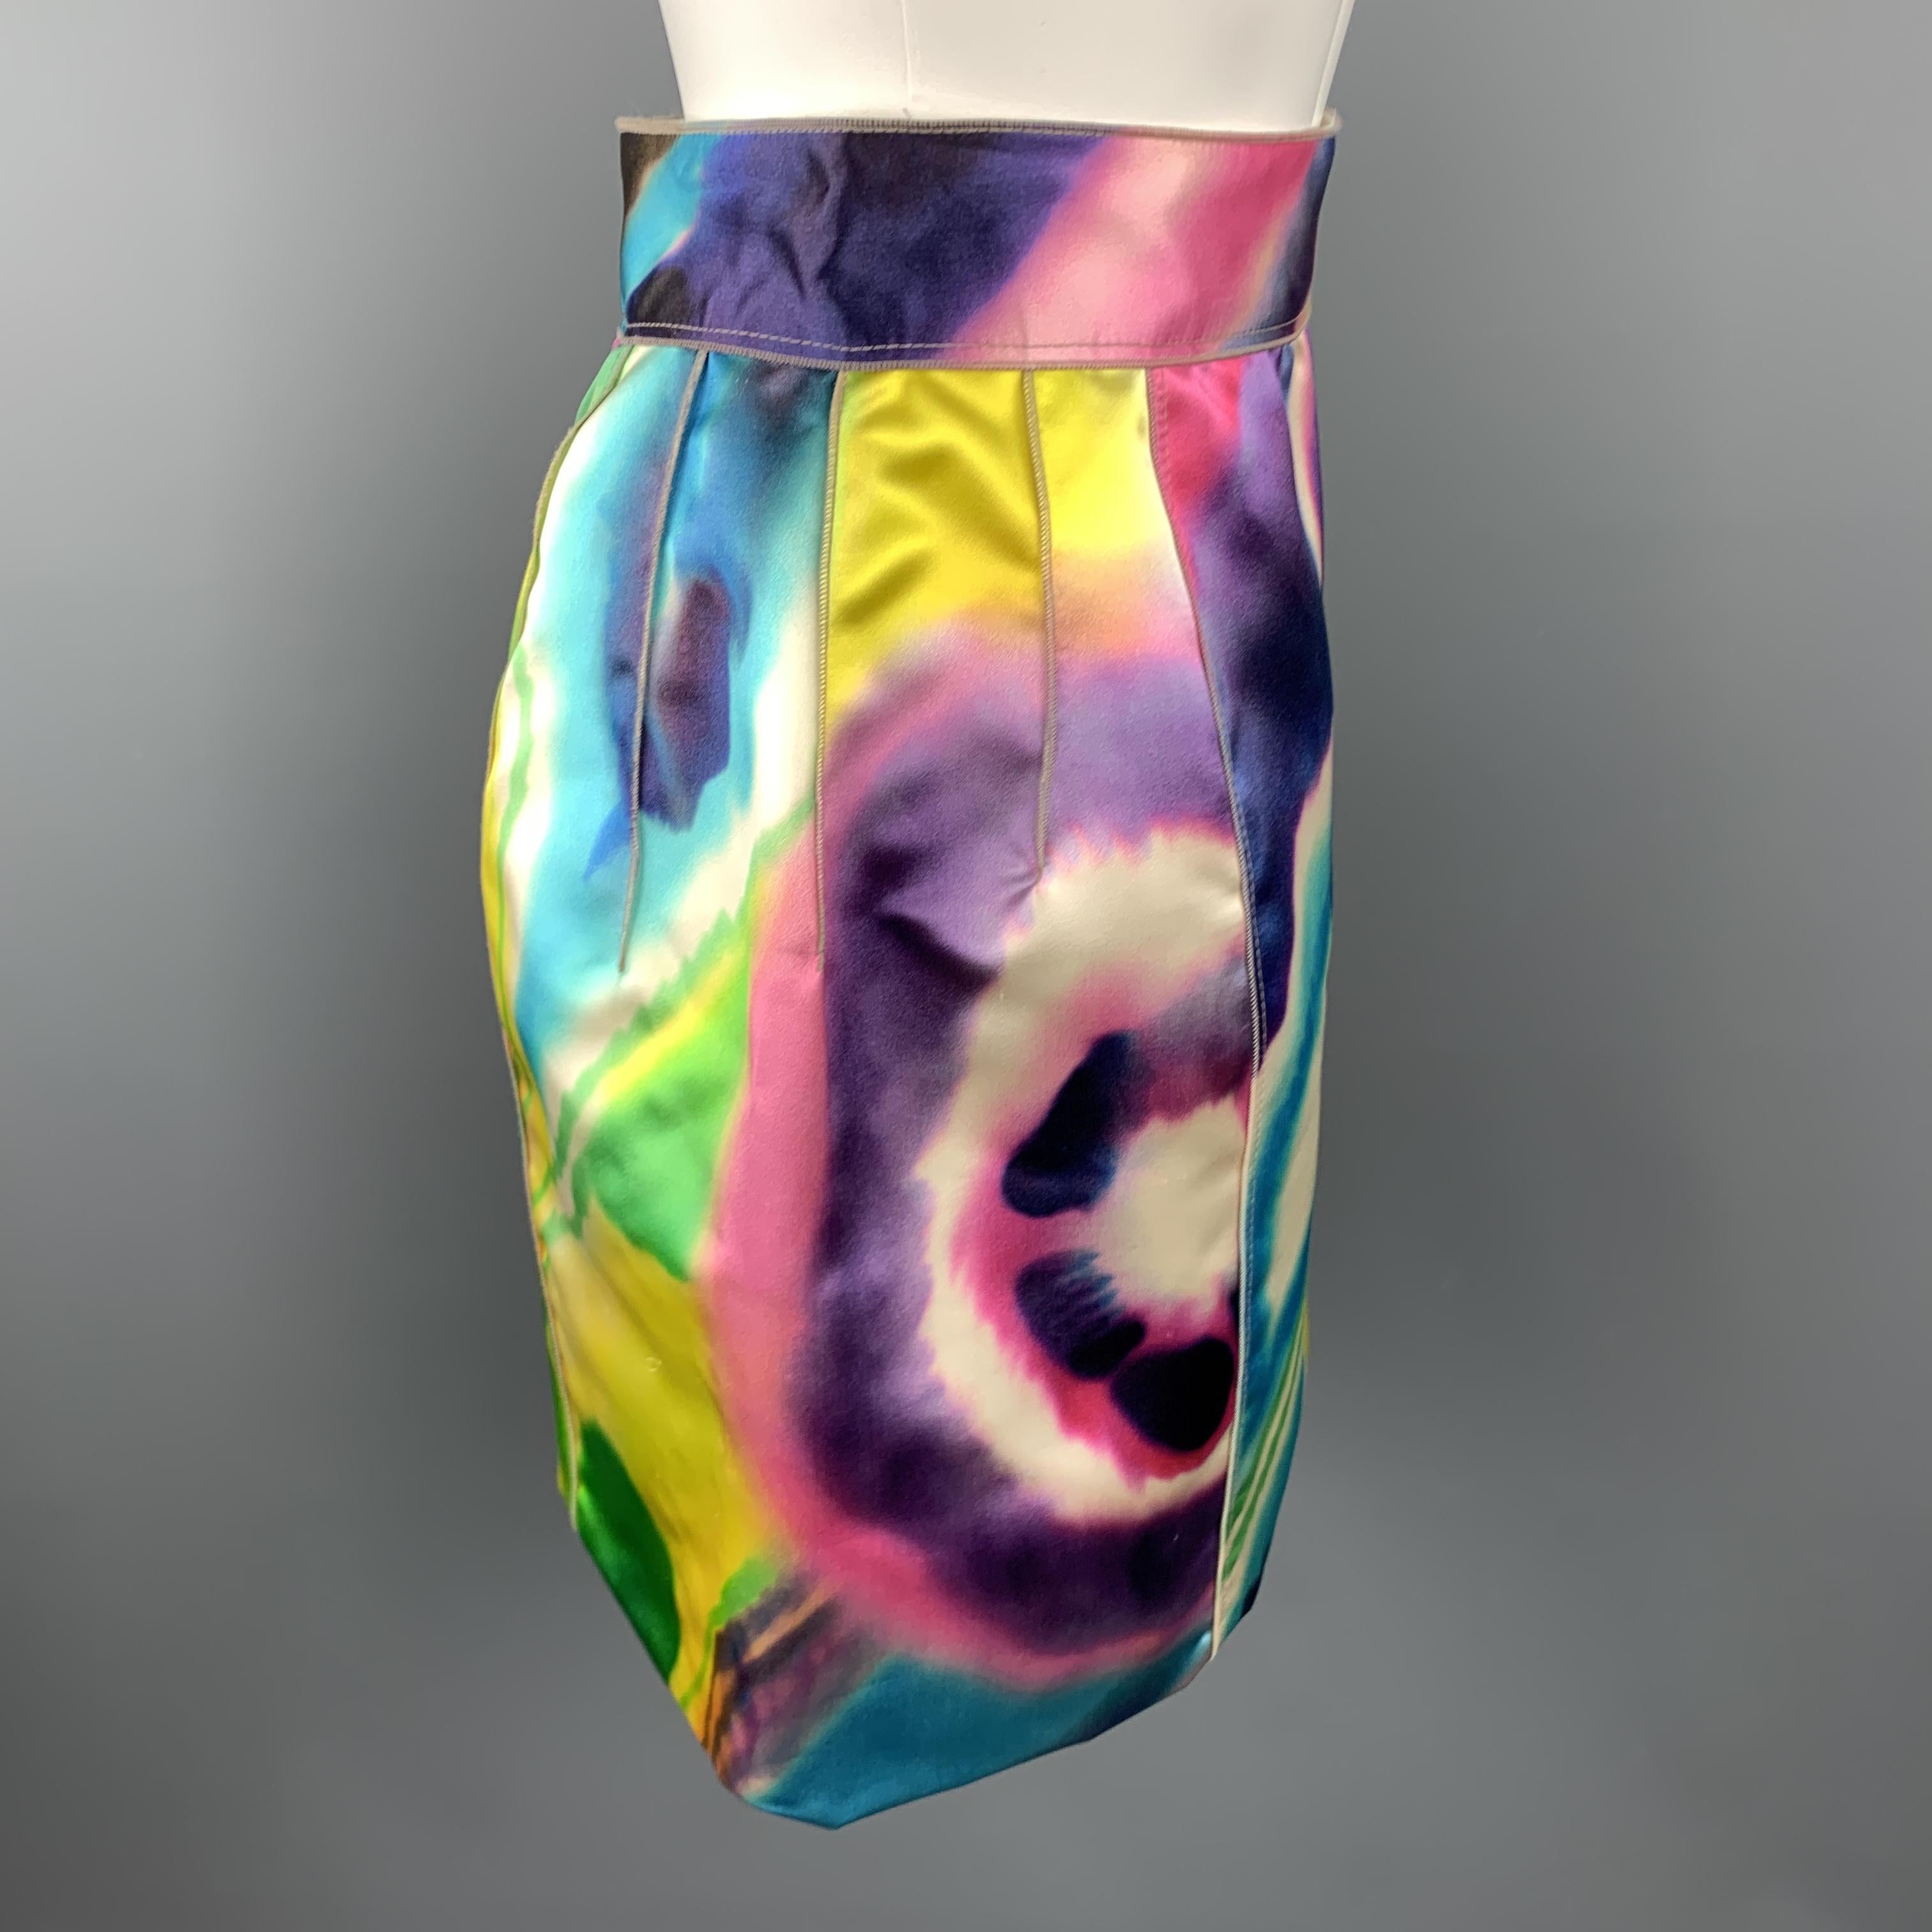 dolce and gabbana zipper skirt